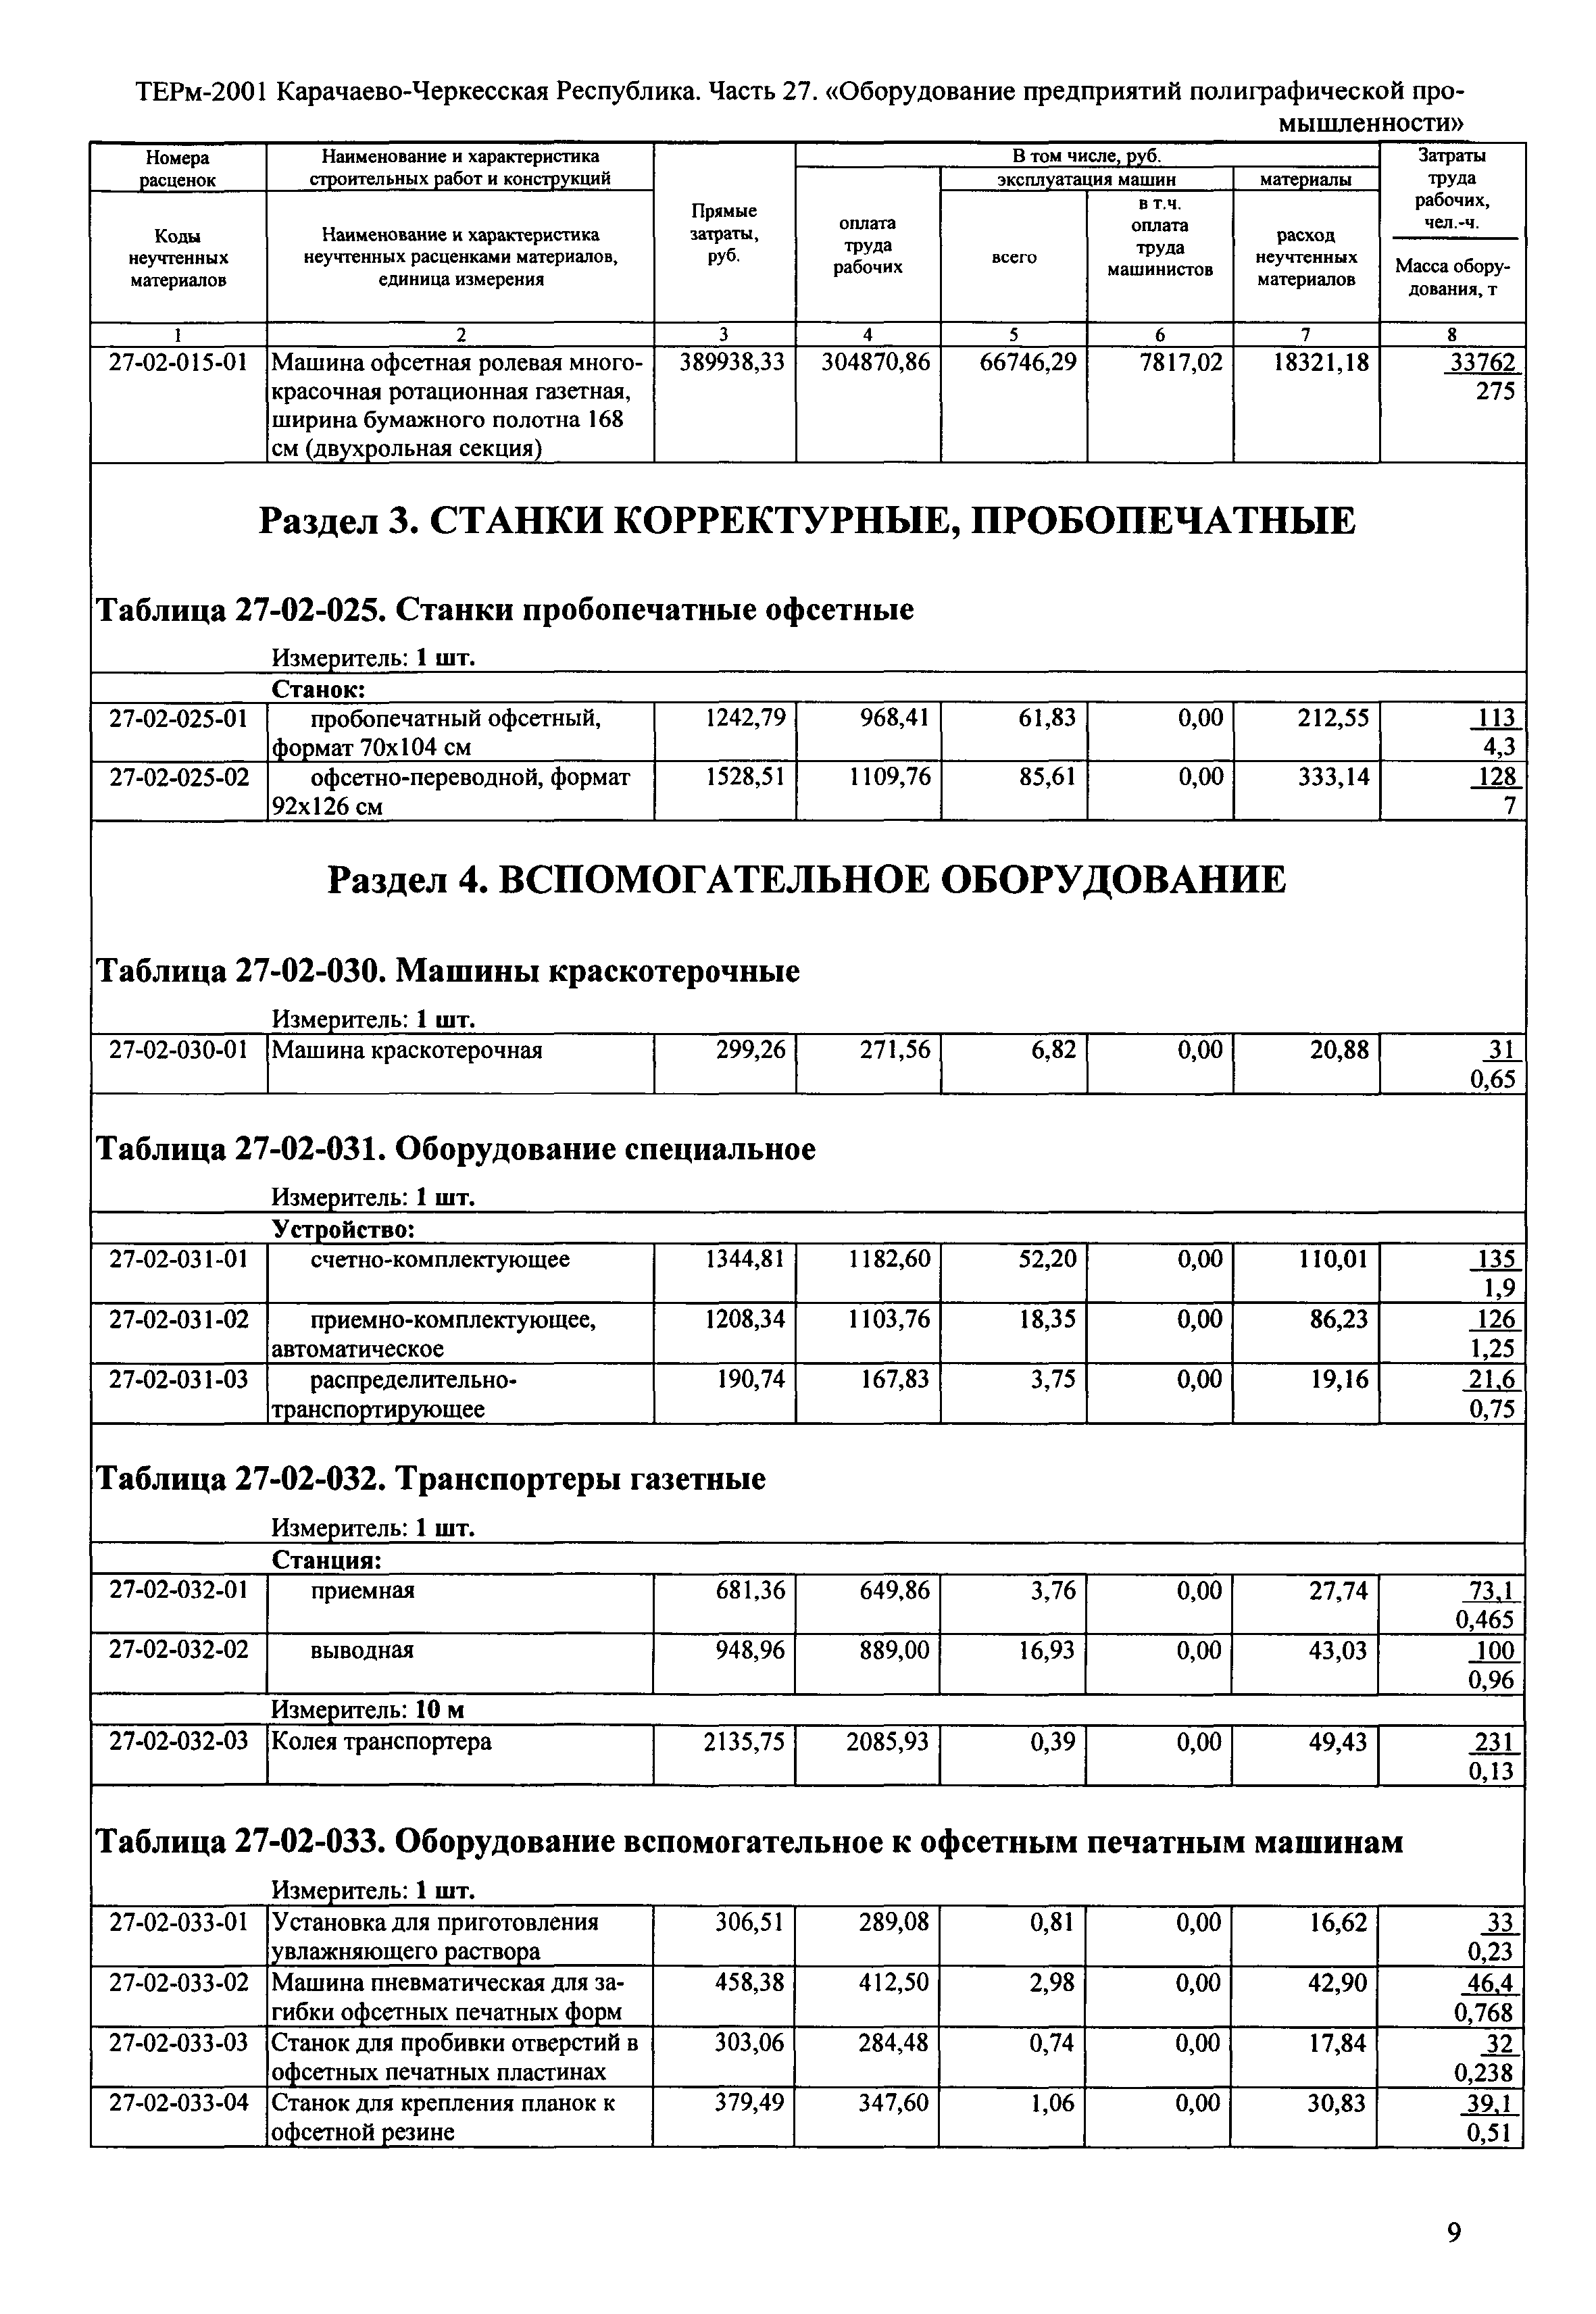 ТЕРм Карачаево-Черкесская Республика 27-2001